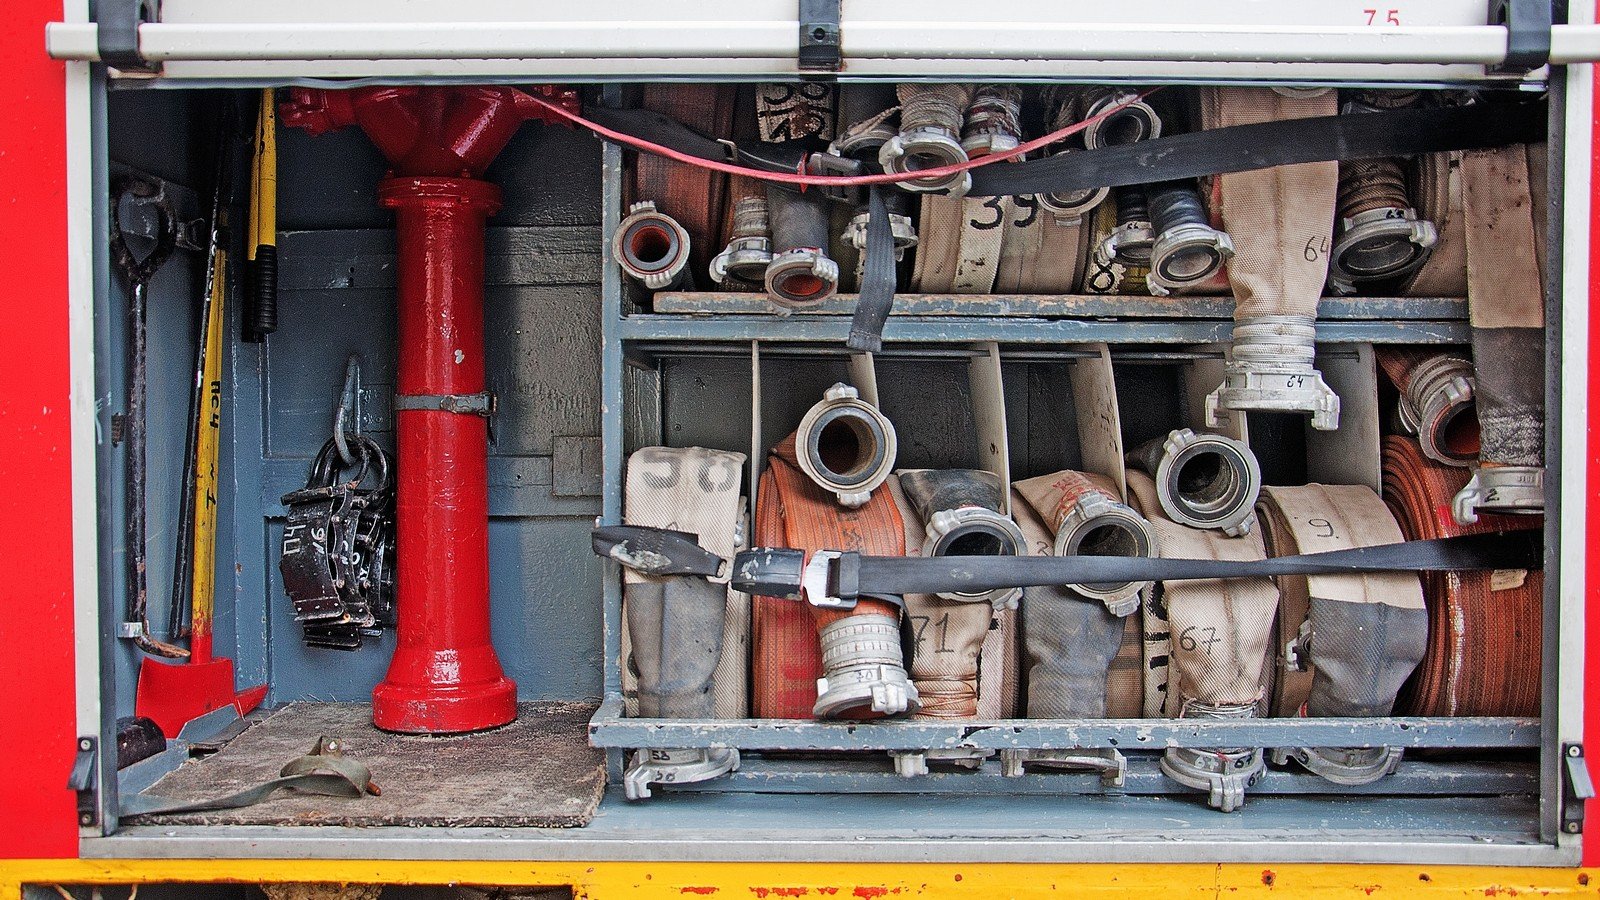 Хранение пожарных автомобилей